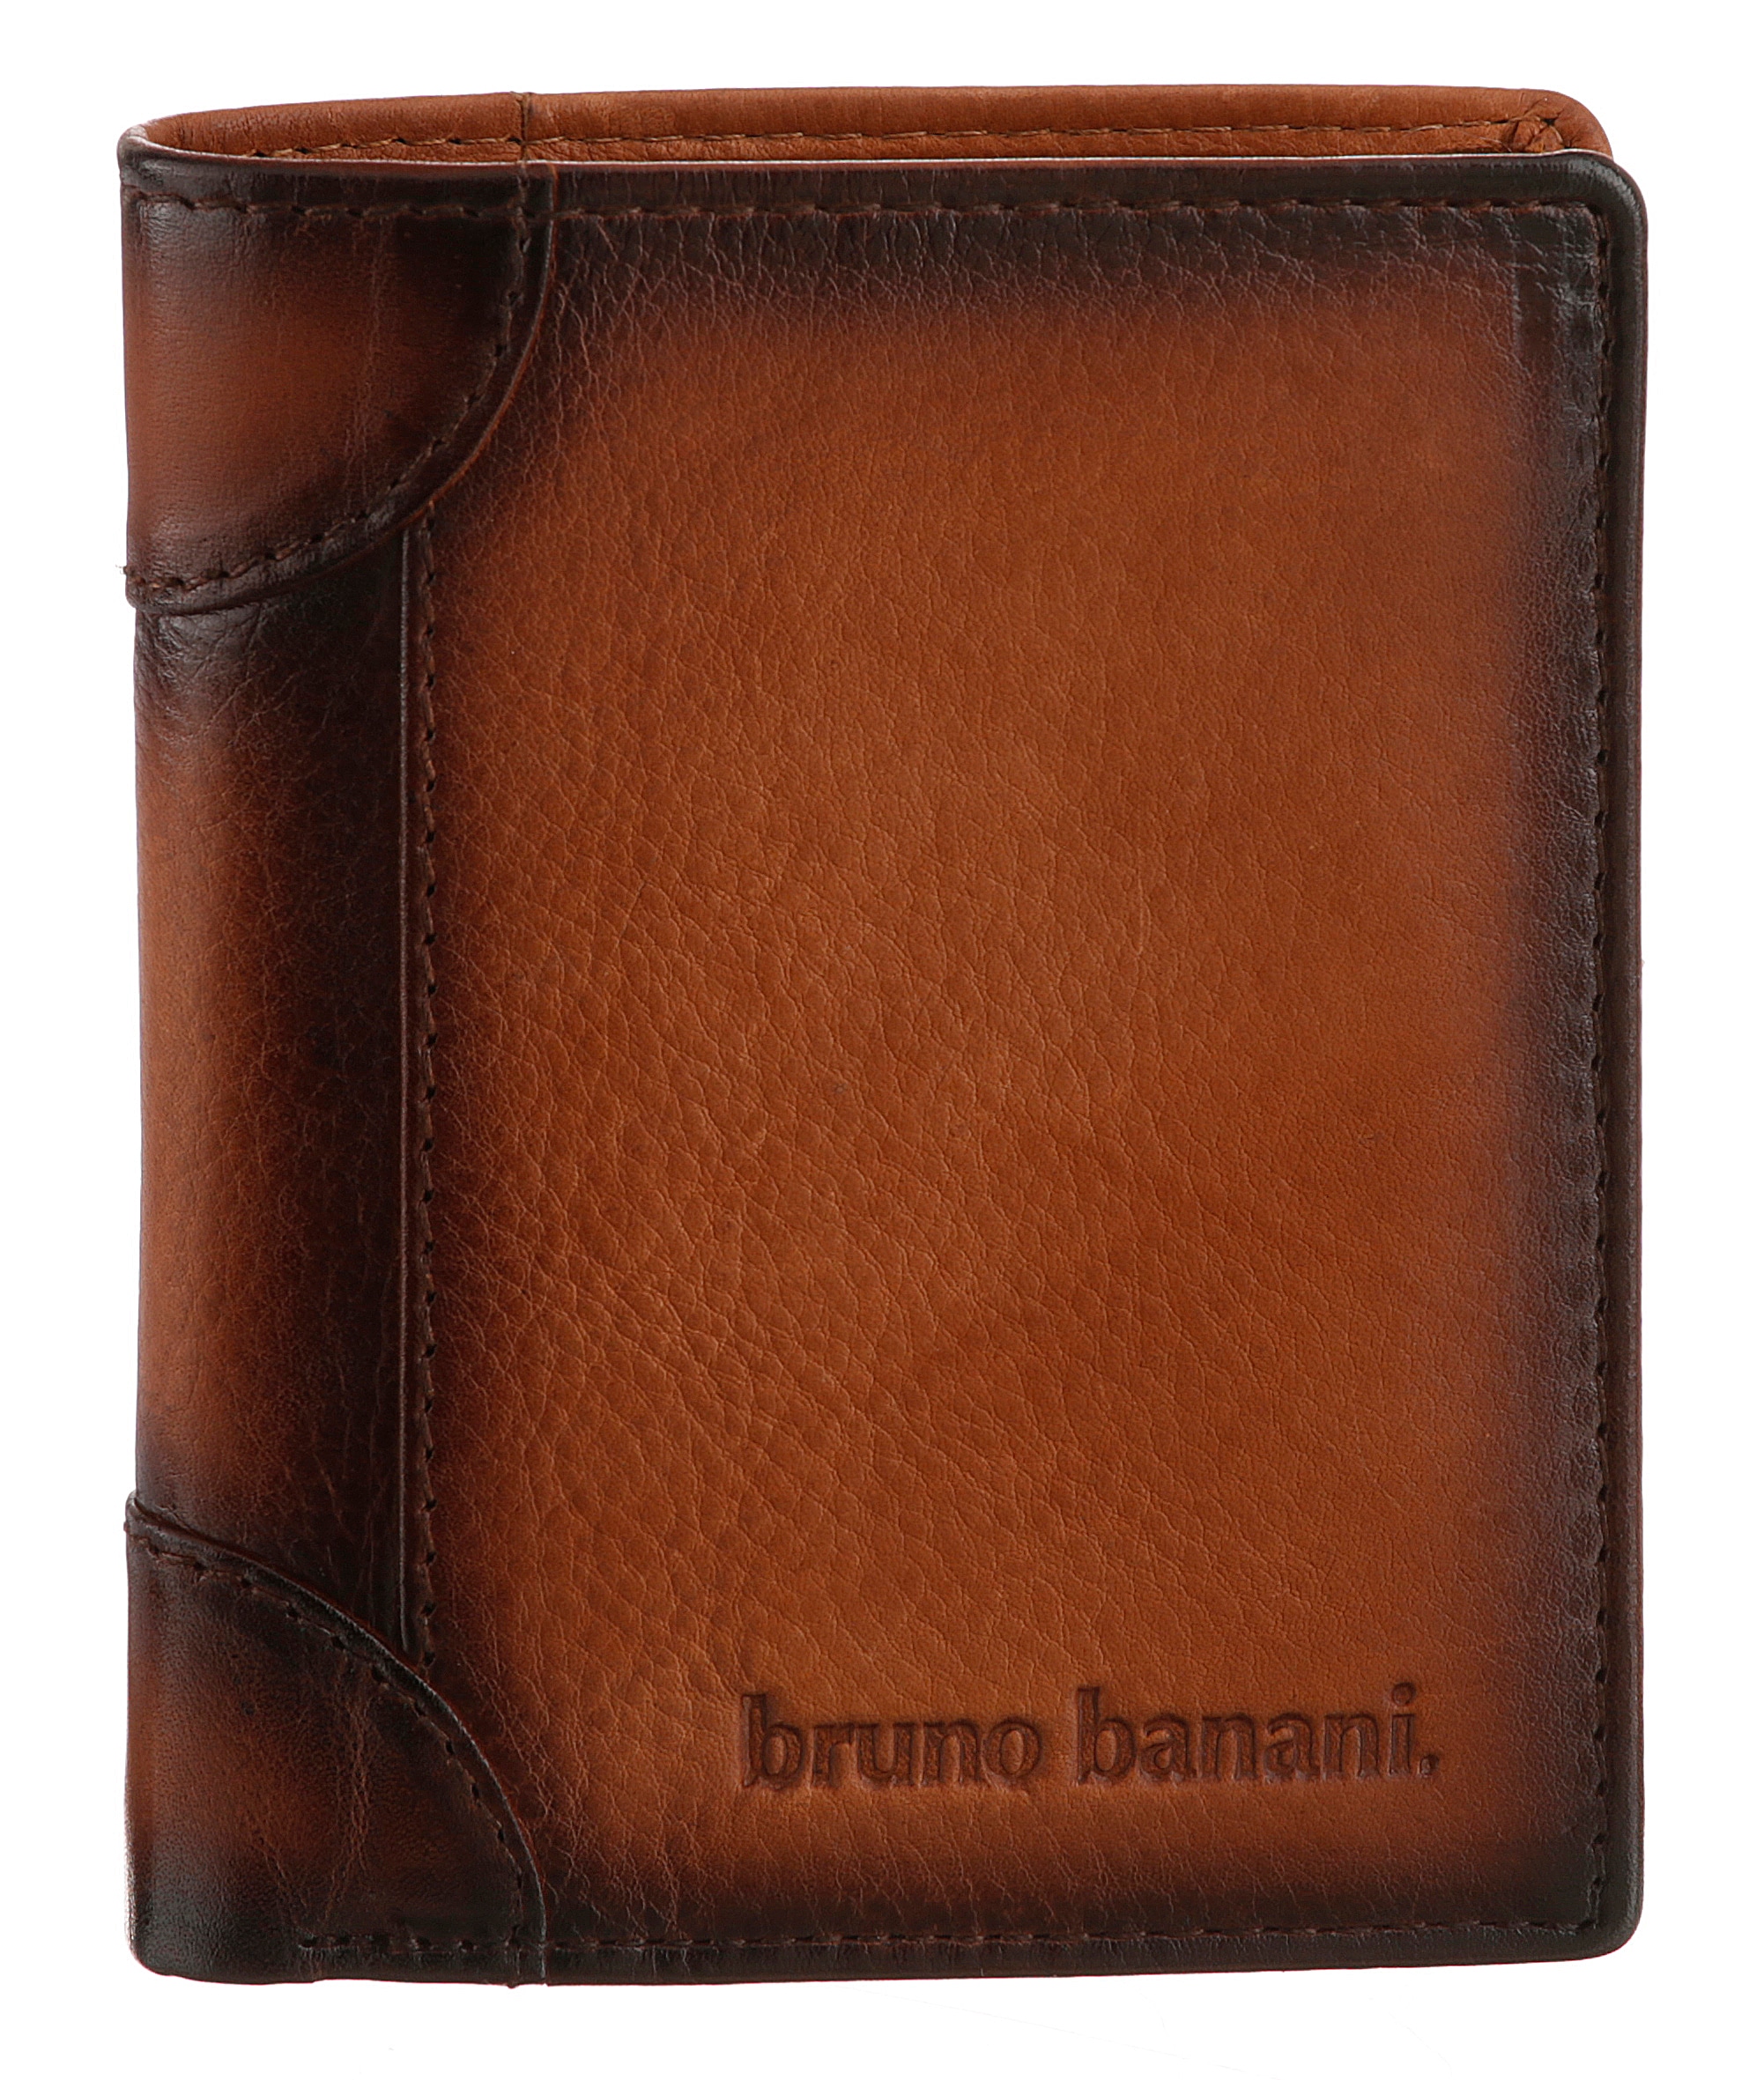 Fächern Banani Geldbörse, Jelmoli-Versand zahlreichen online Leder Bruno | shoppen mit echtem aus